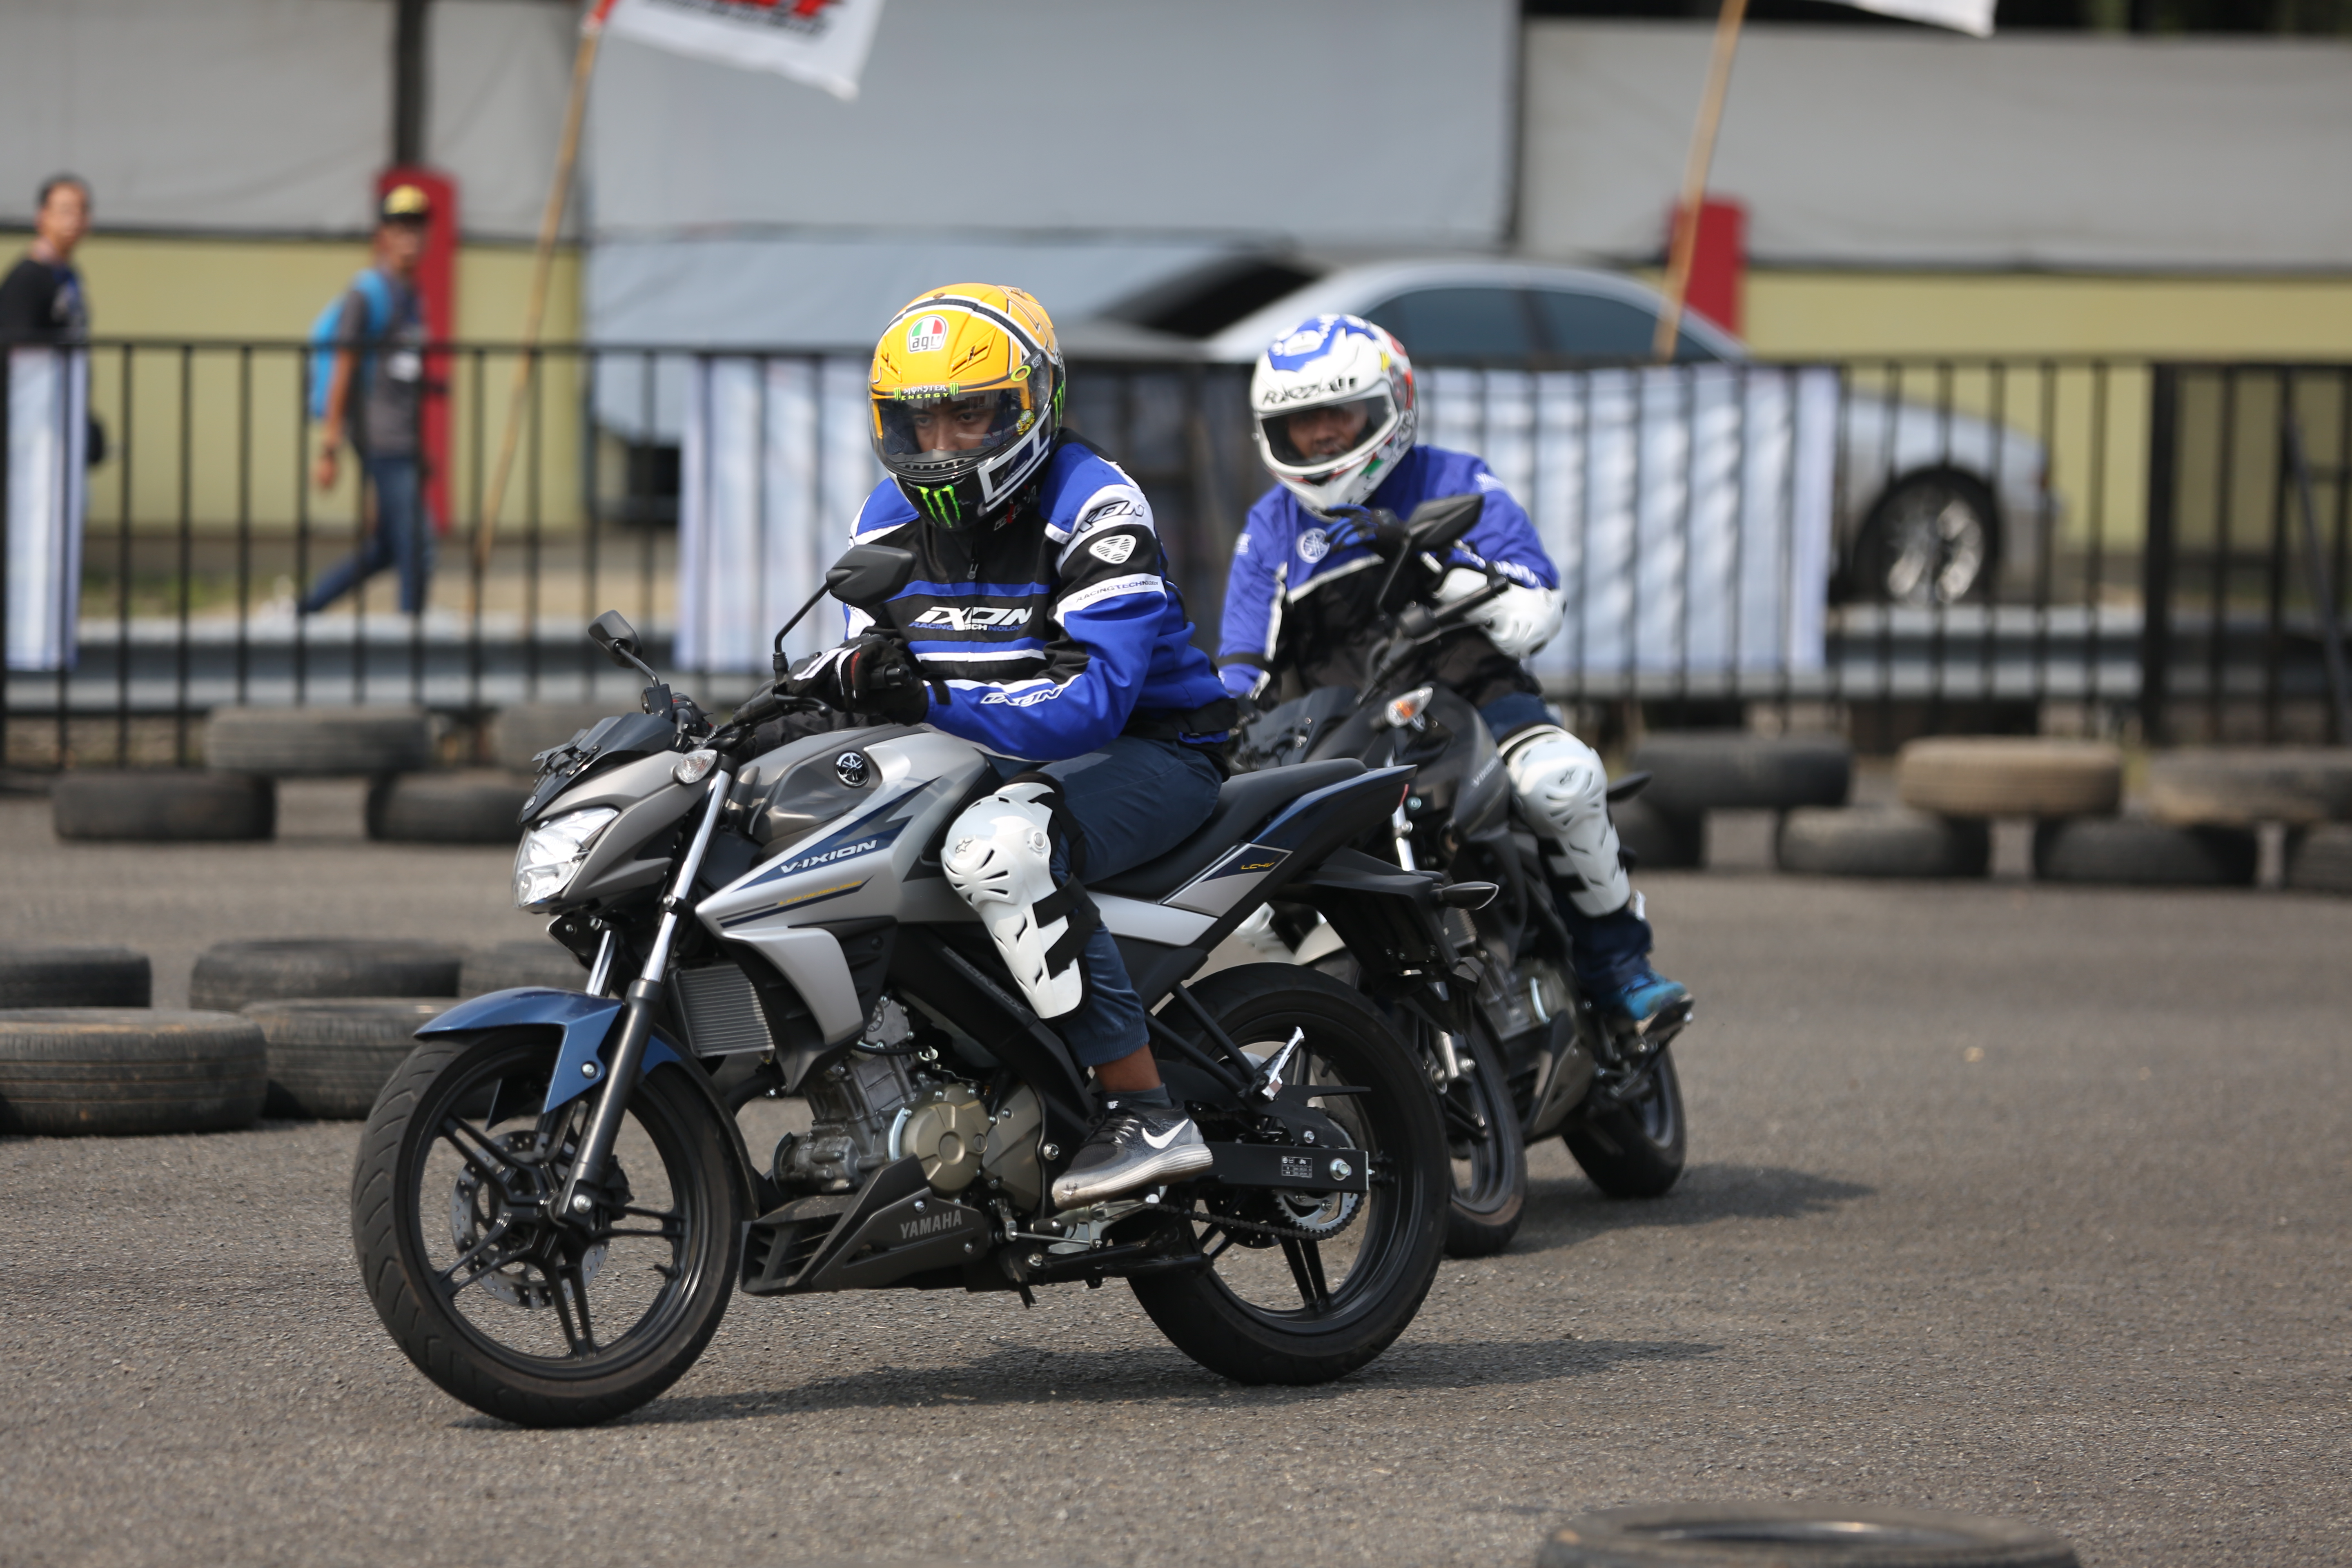 Fun Riding Competition YSR 2017 Seri 2 Gilamotor